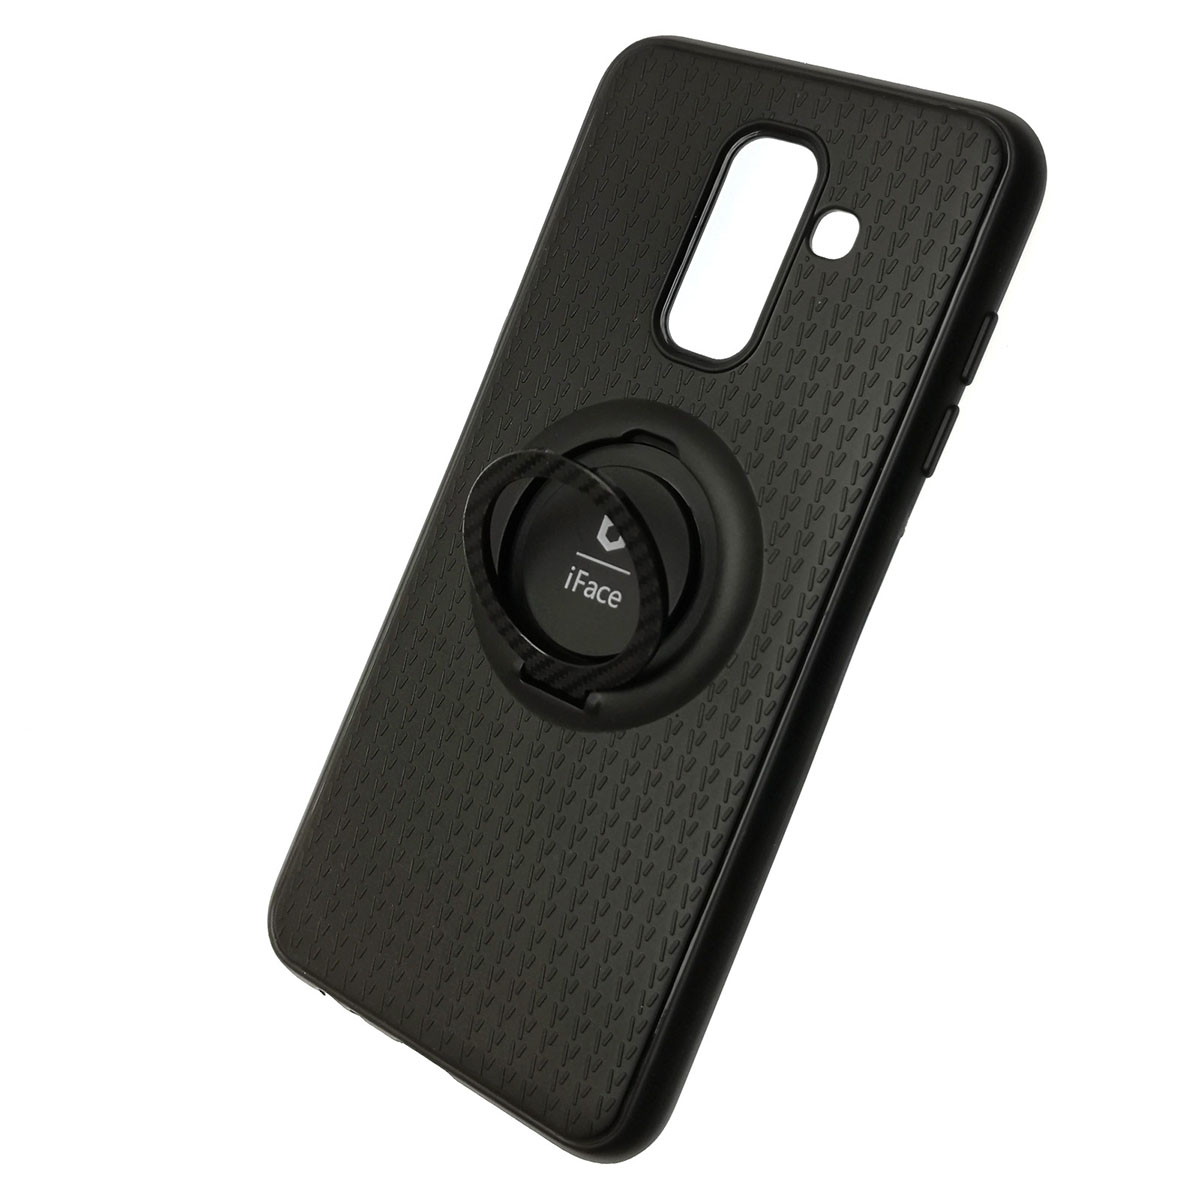 Чехол накладка iFace для SAMSUNG Galaxy J6 2018 (SM-J600), силикон, металл, кольцо держатель, цвет черный.